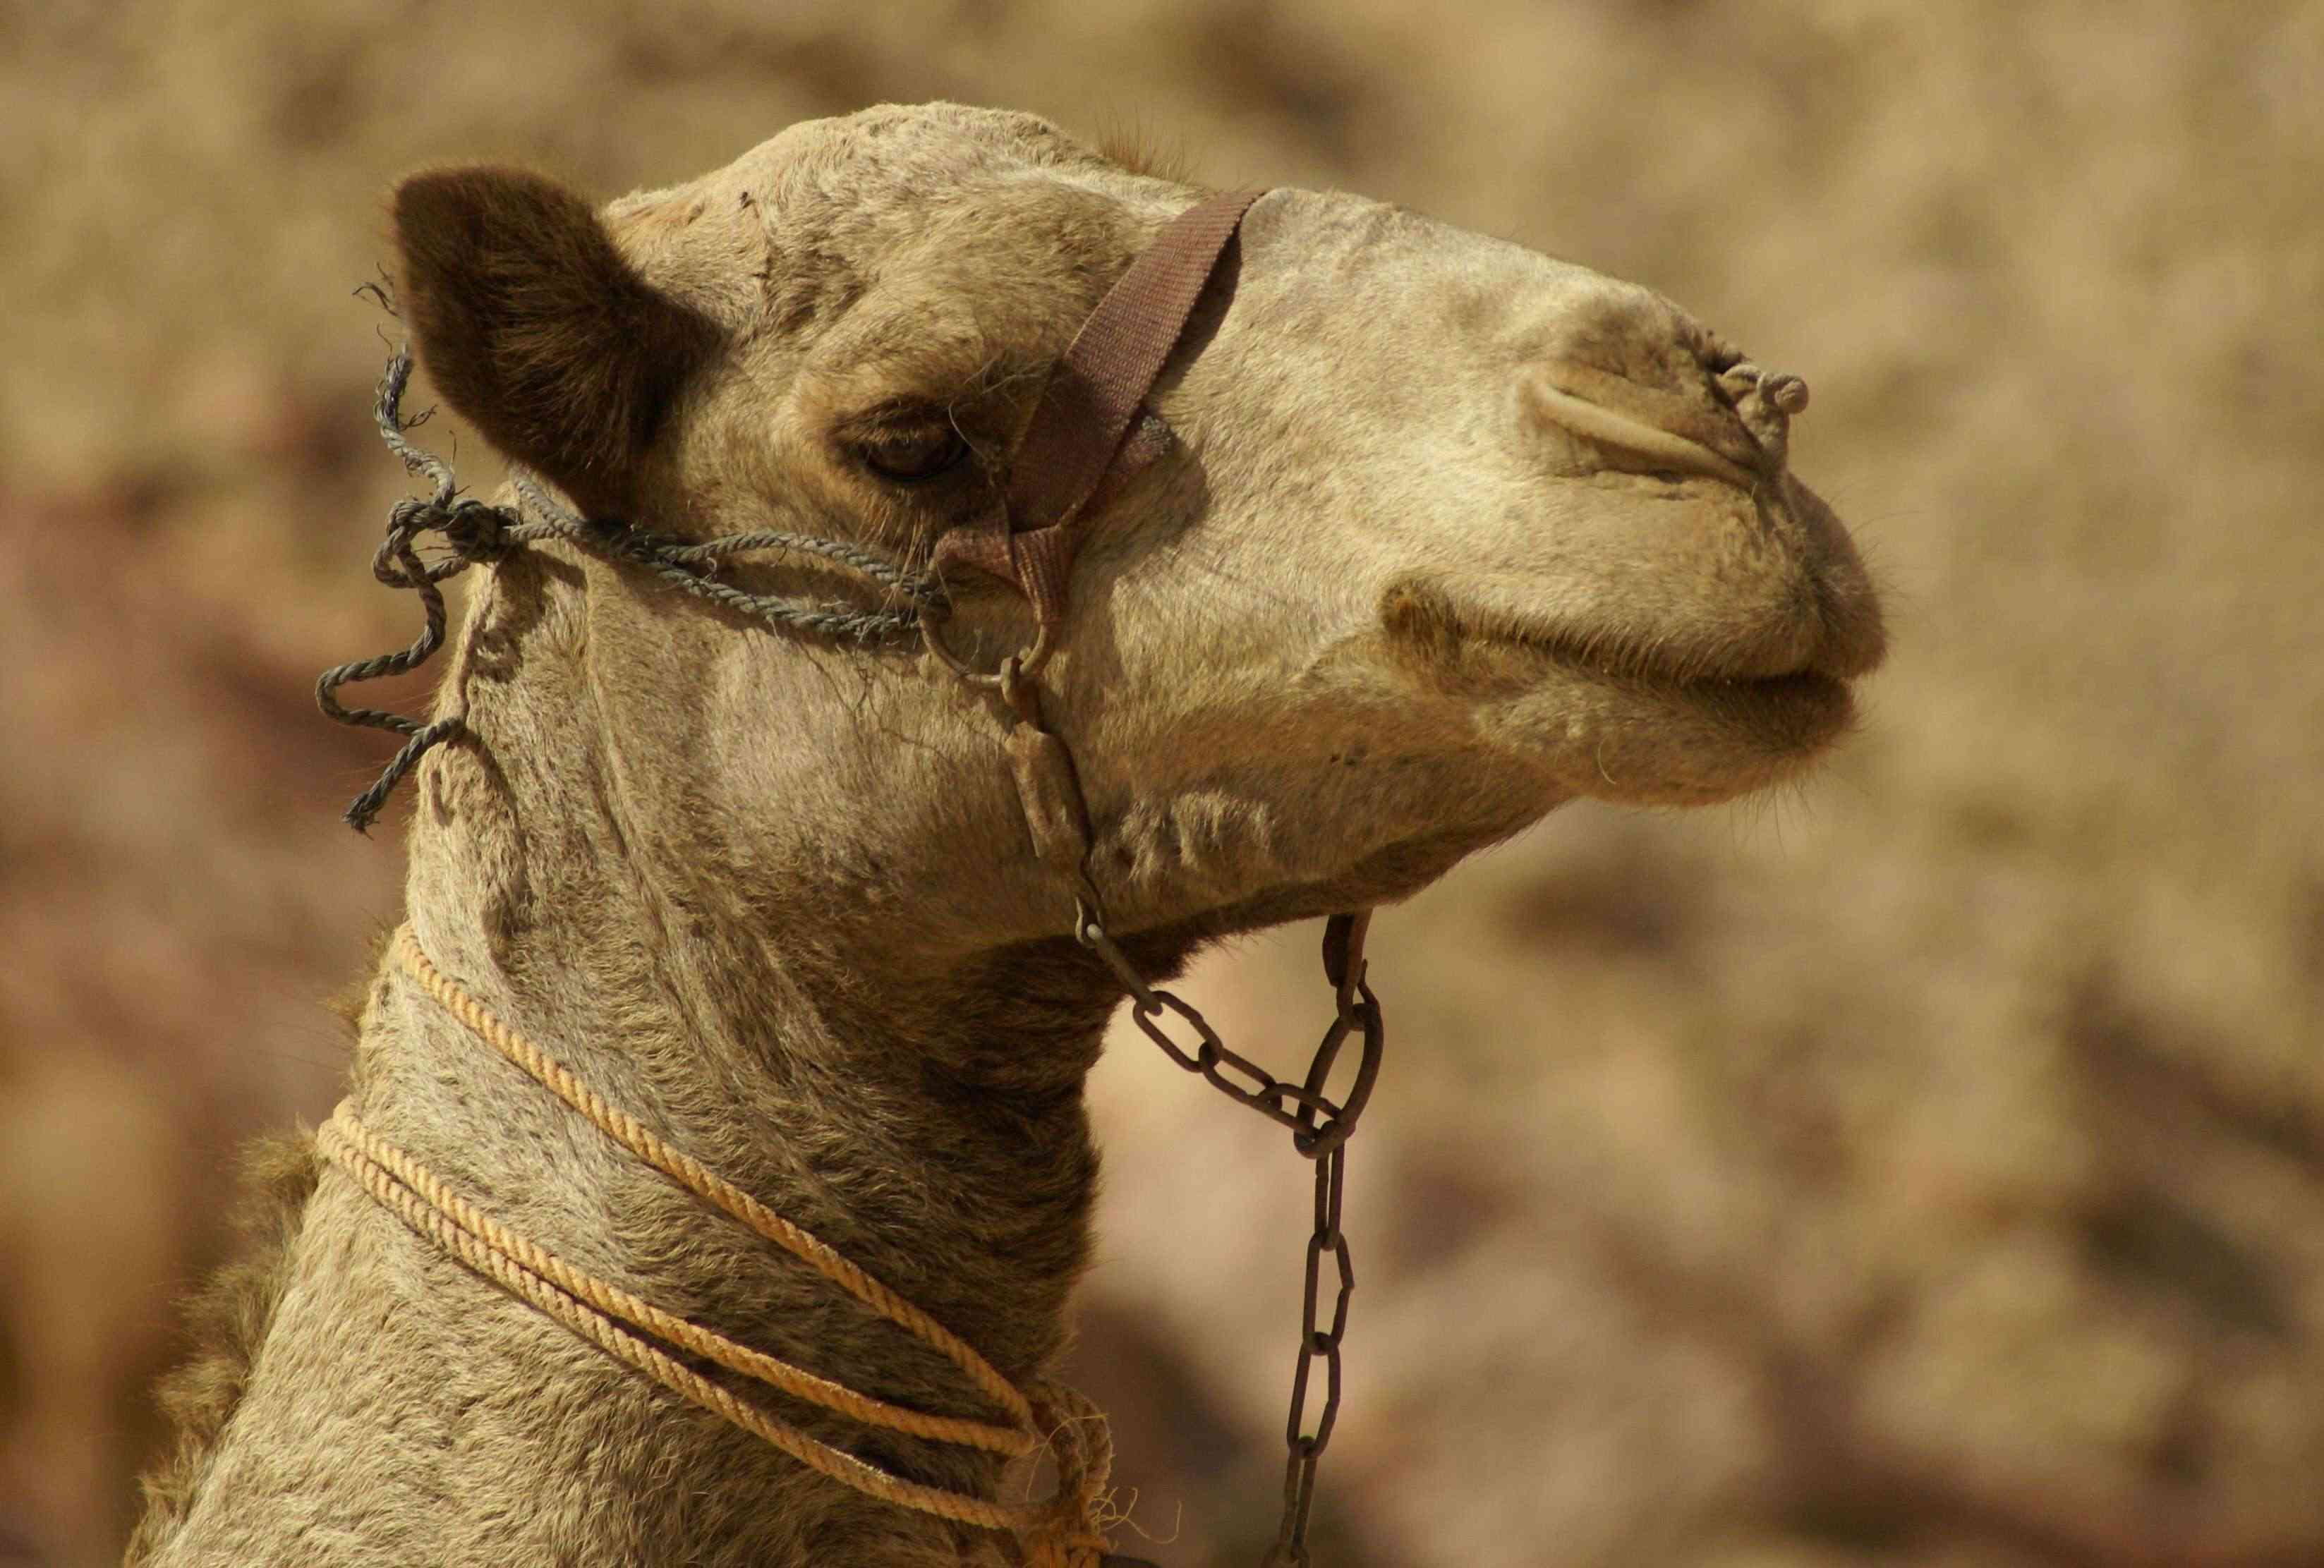 معلومات عن الحيوانات الثدية والزواحف مع الصور والفيديو Camelu10